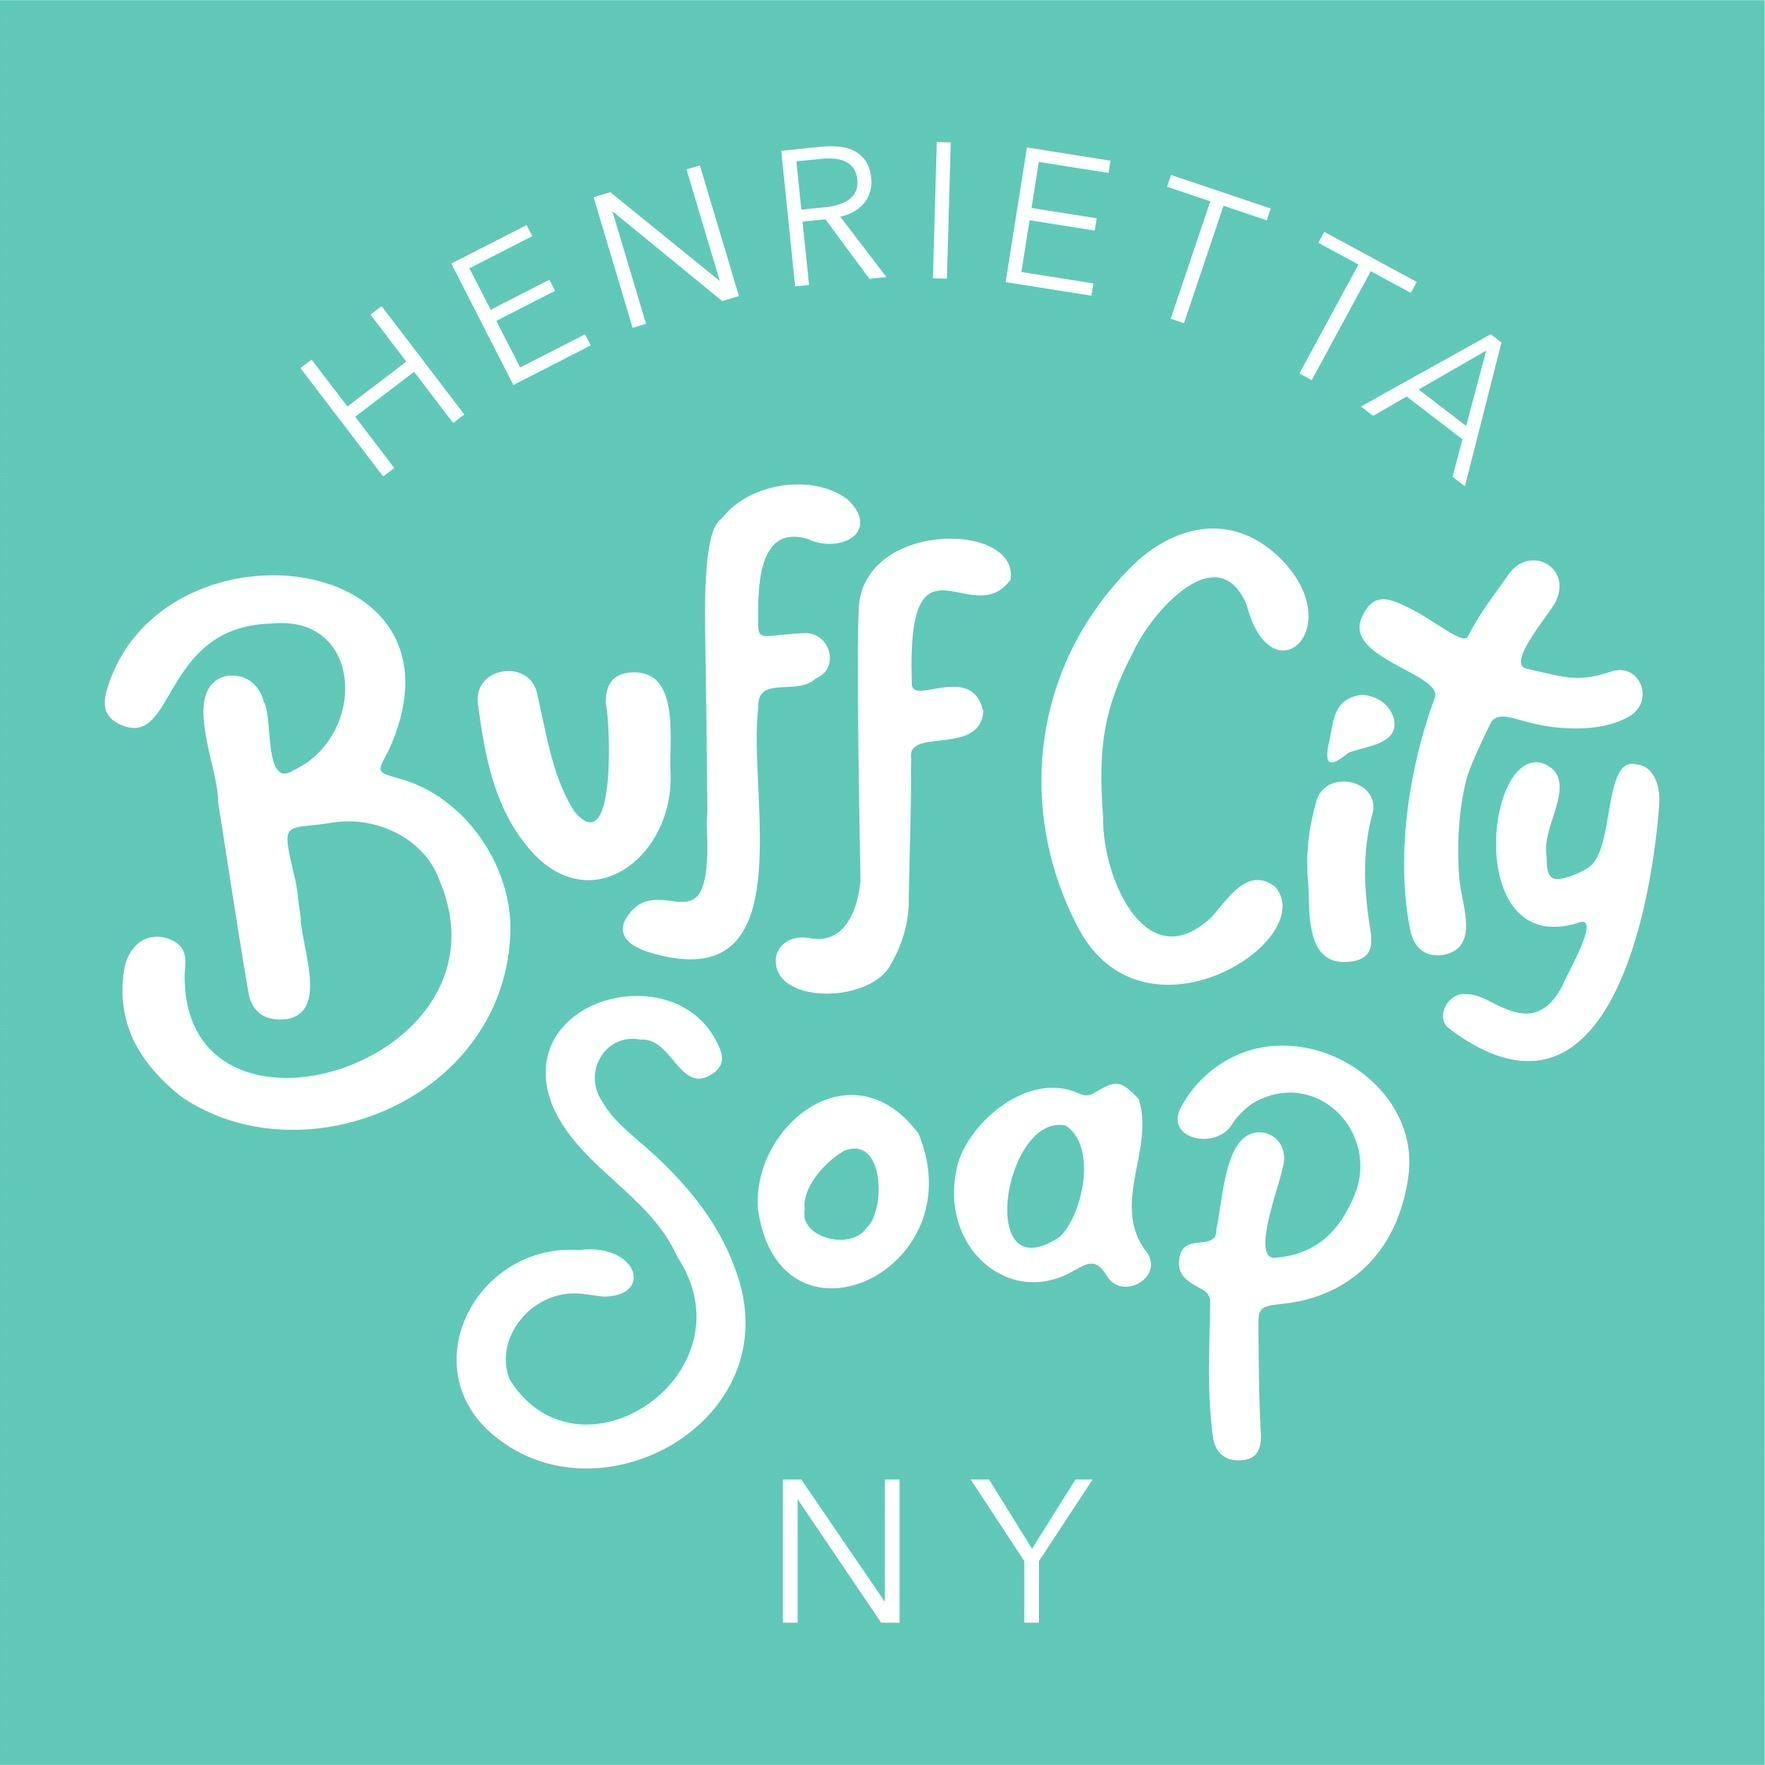 Buff City Soap – Henrietta Rochester (585)286-4939